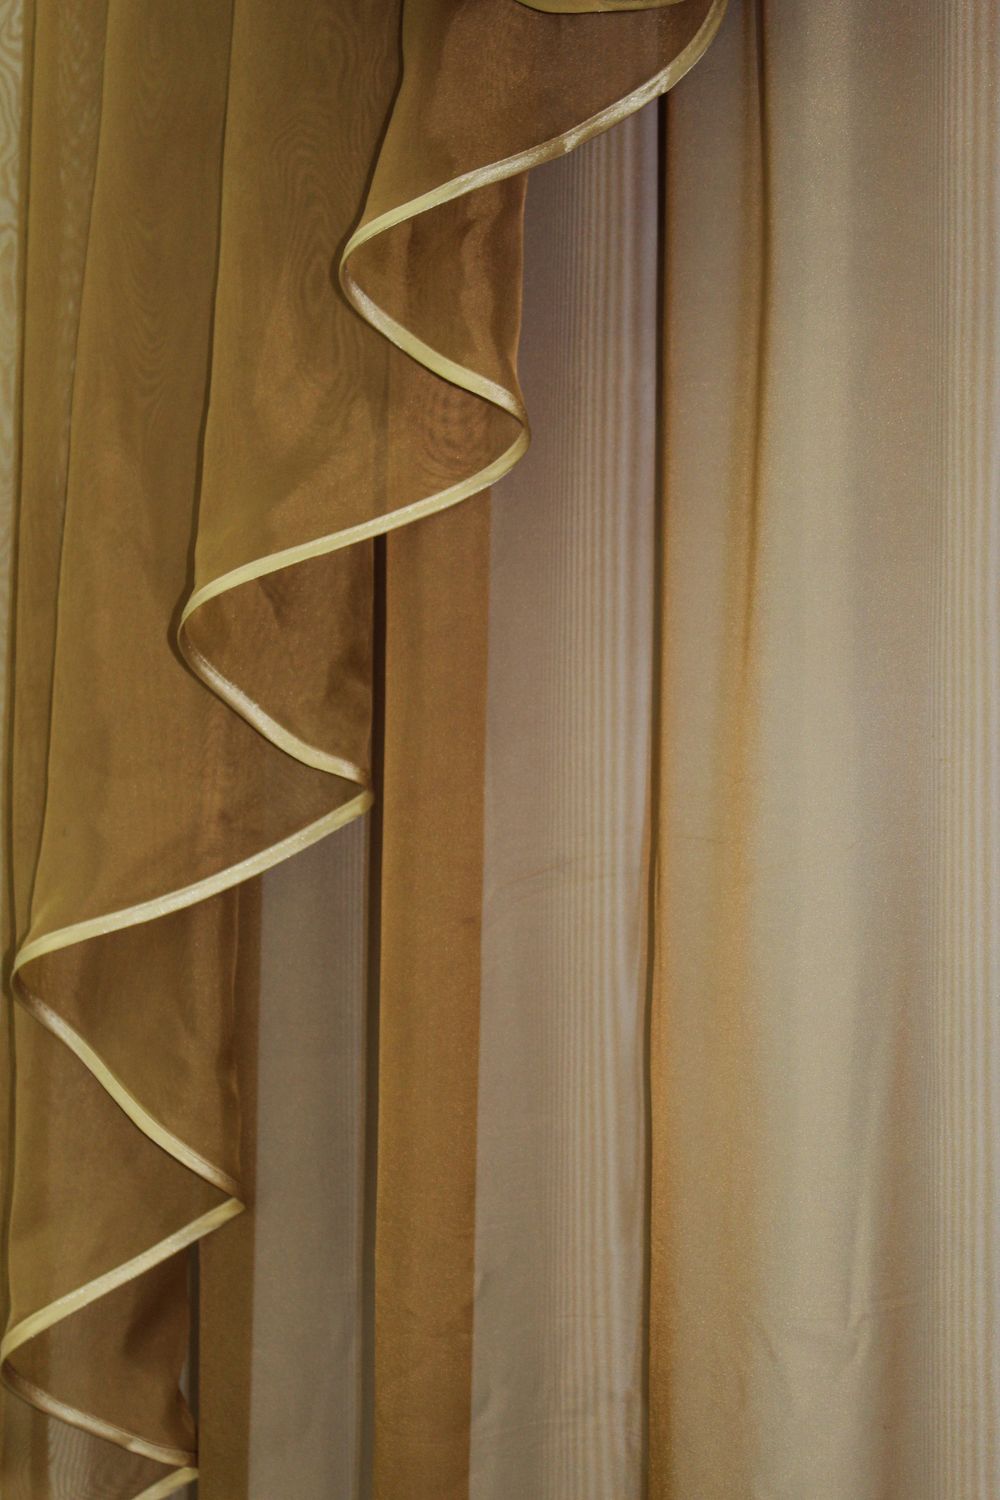 Готовый комплект декоративных штор с ламбрекеном на карниз 2,5м цвет коричневый с белым 005лш 70-050